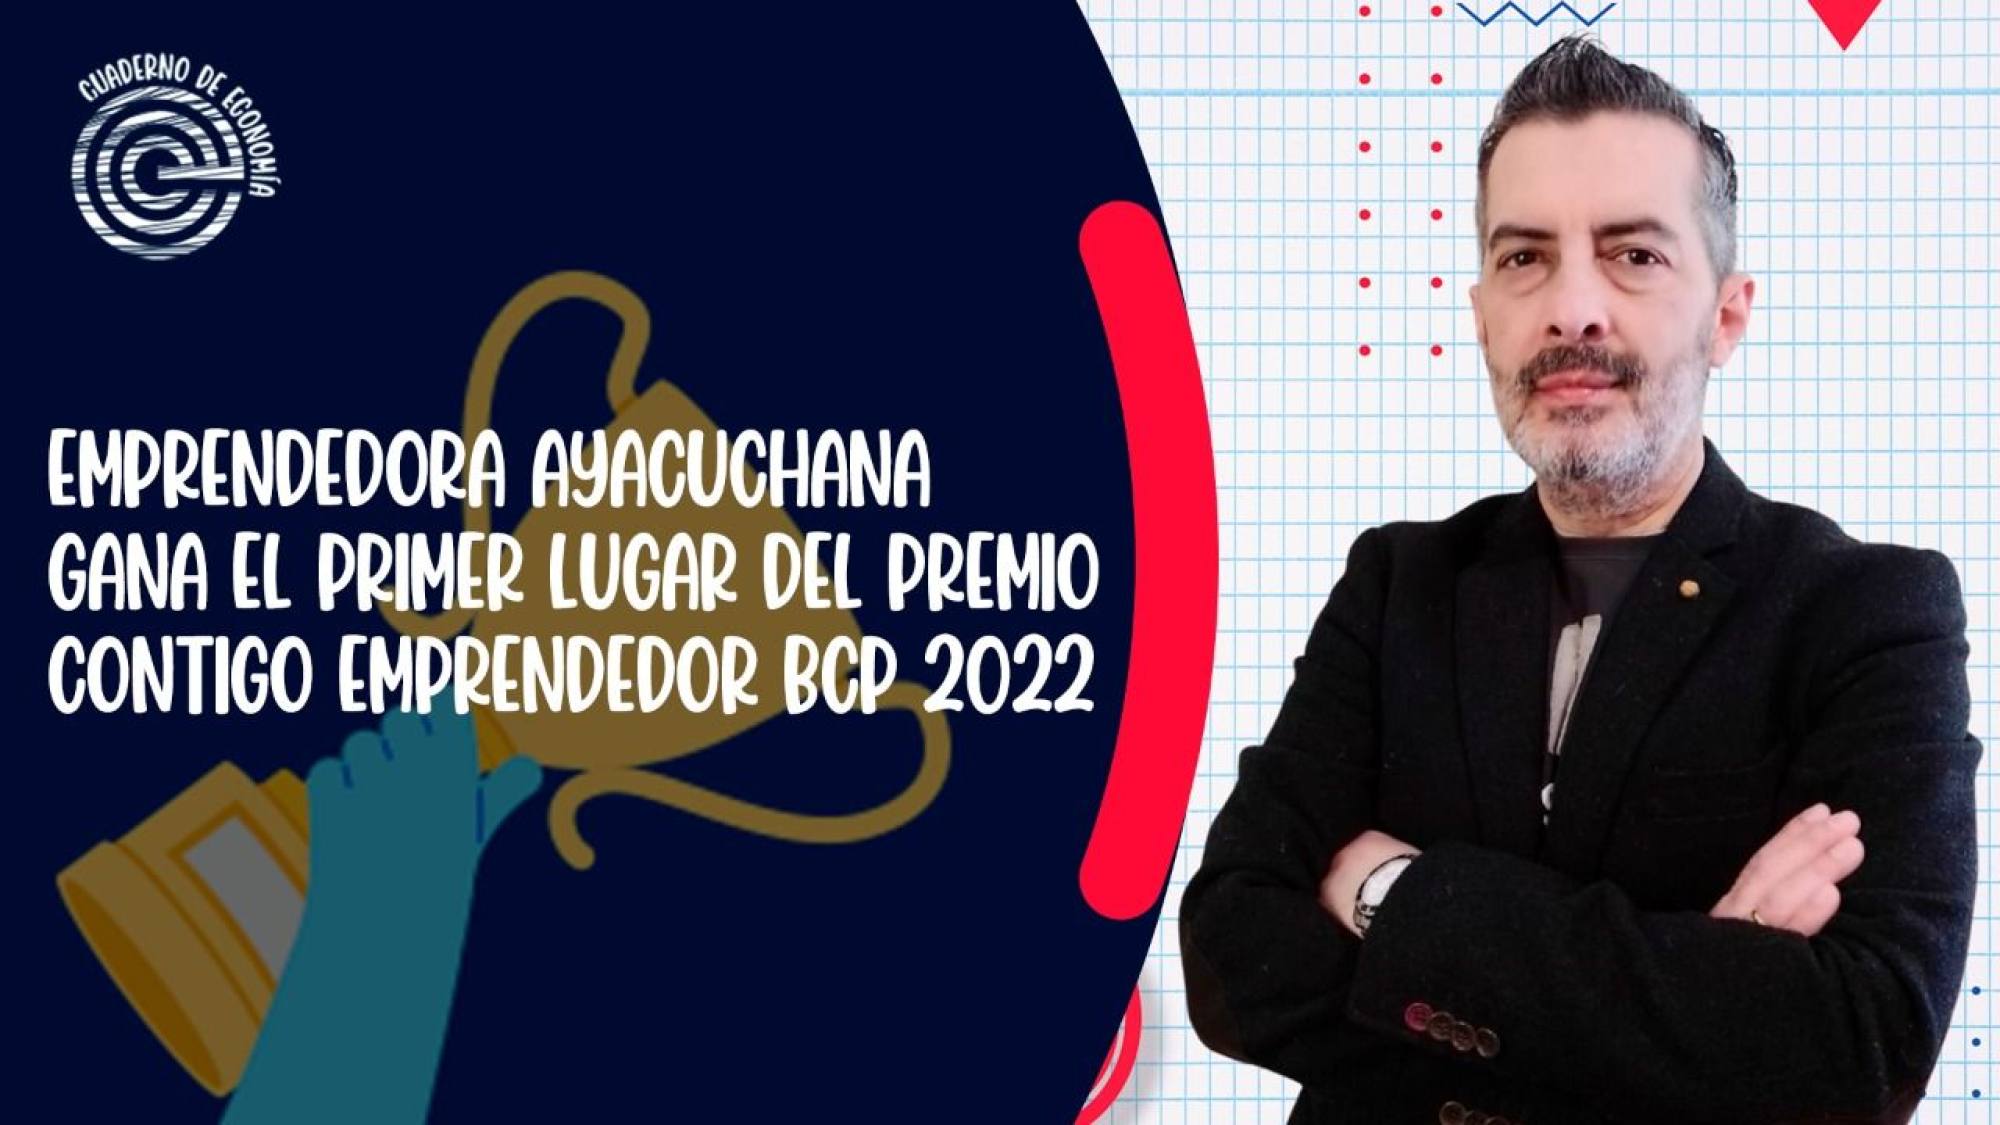 Emprendedora ayacuchana gana el premio Contigo Emprendedor BCP 2022, Epicentro TV